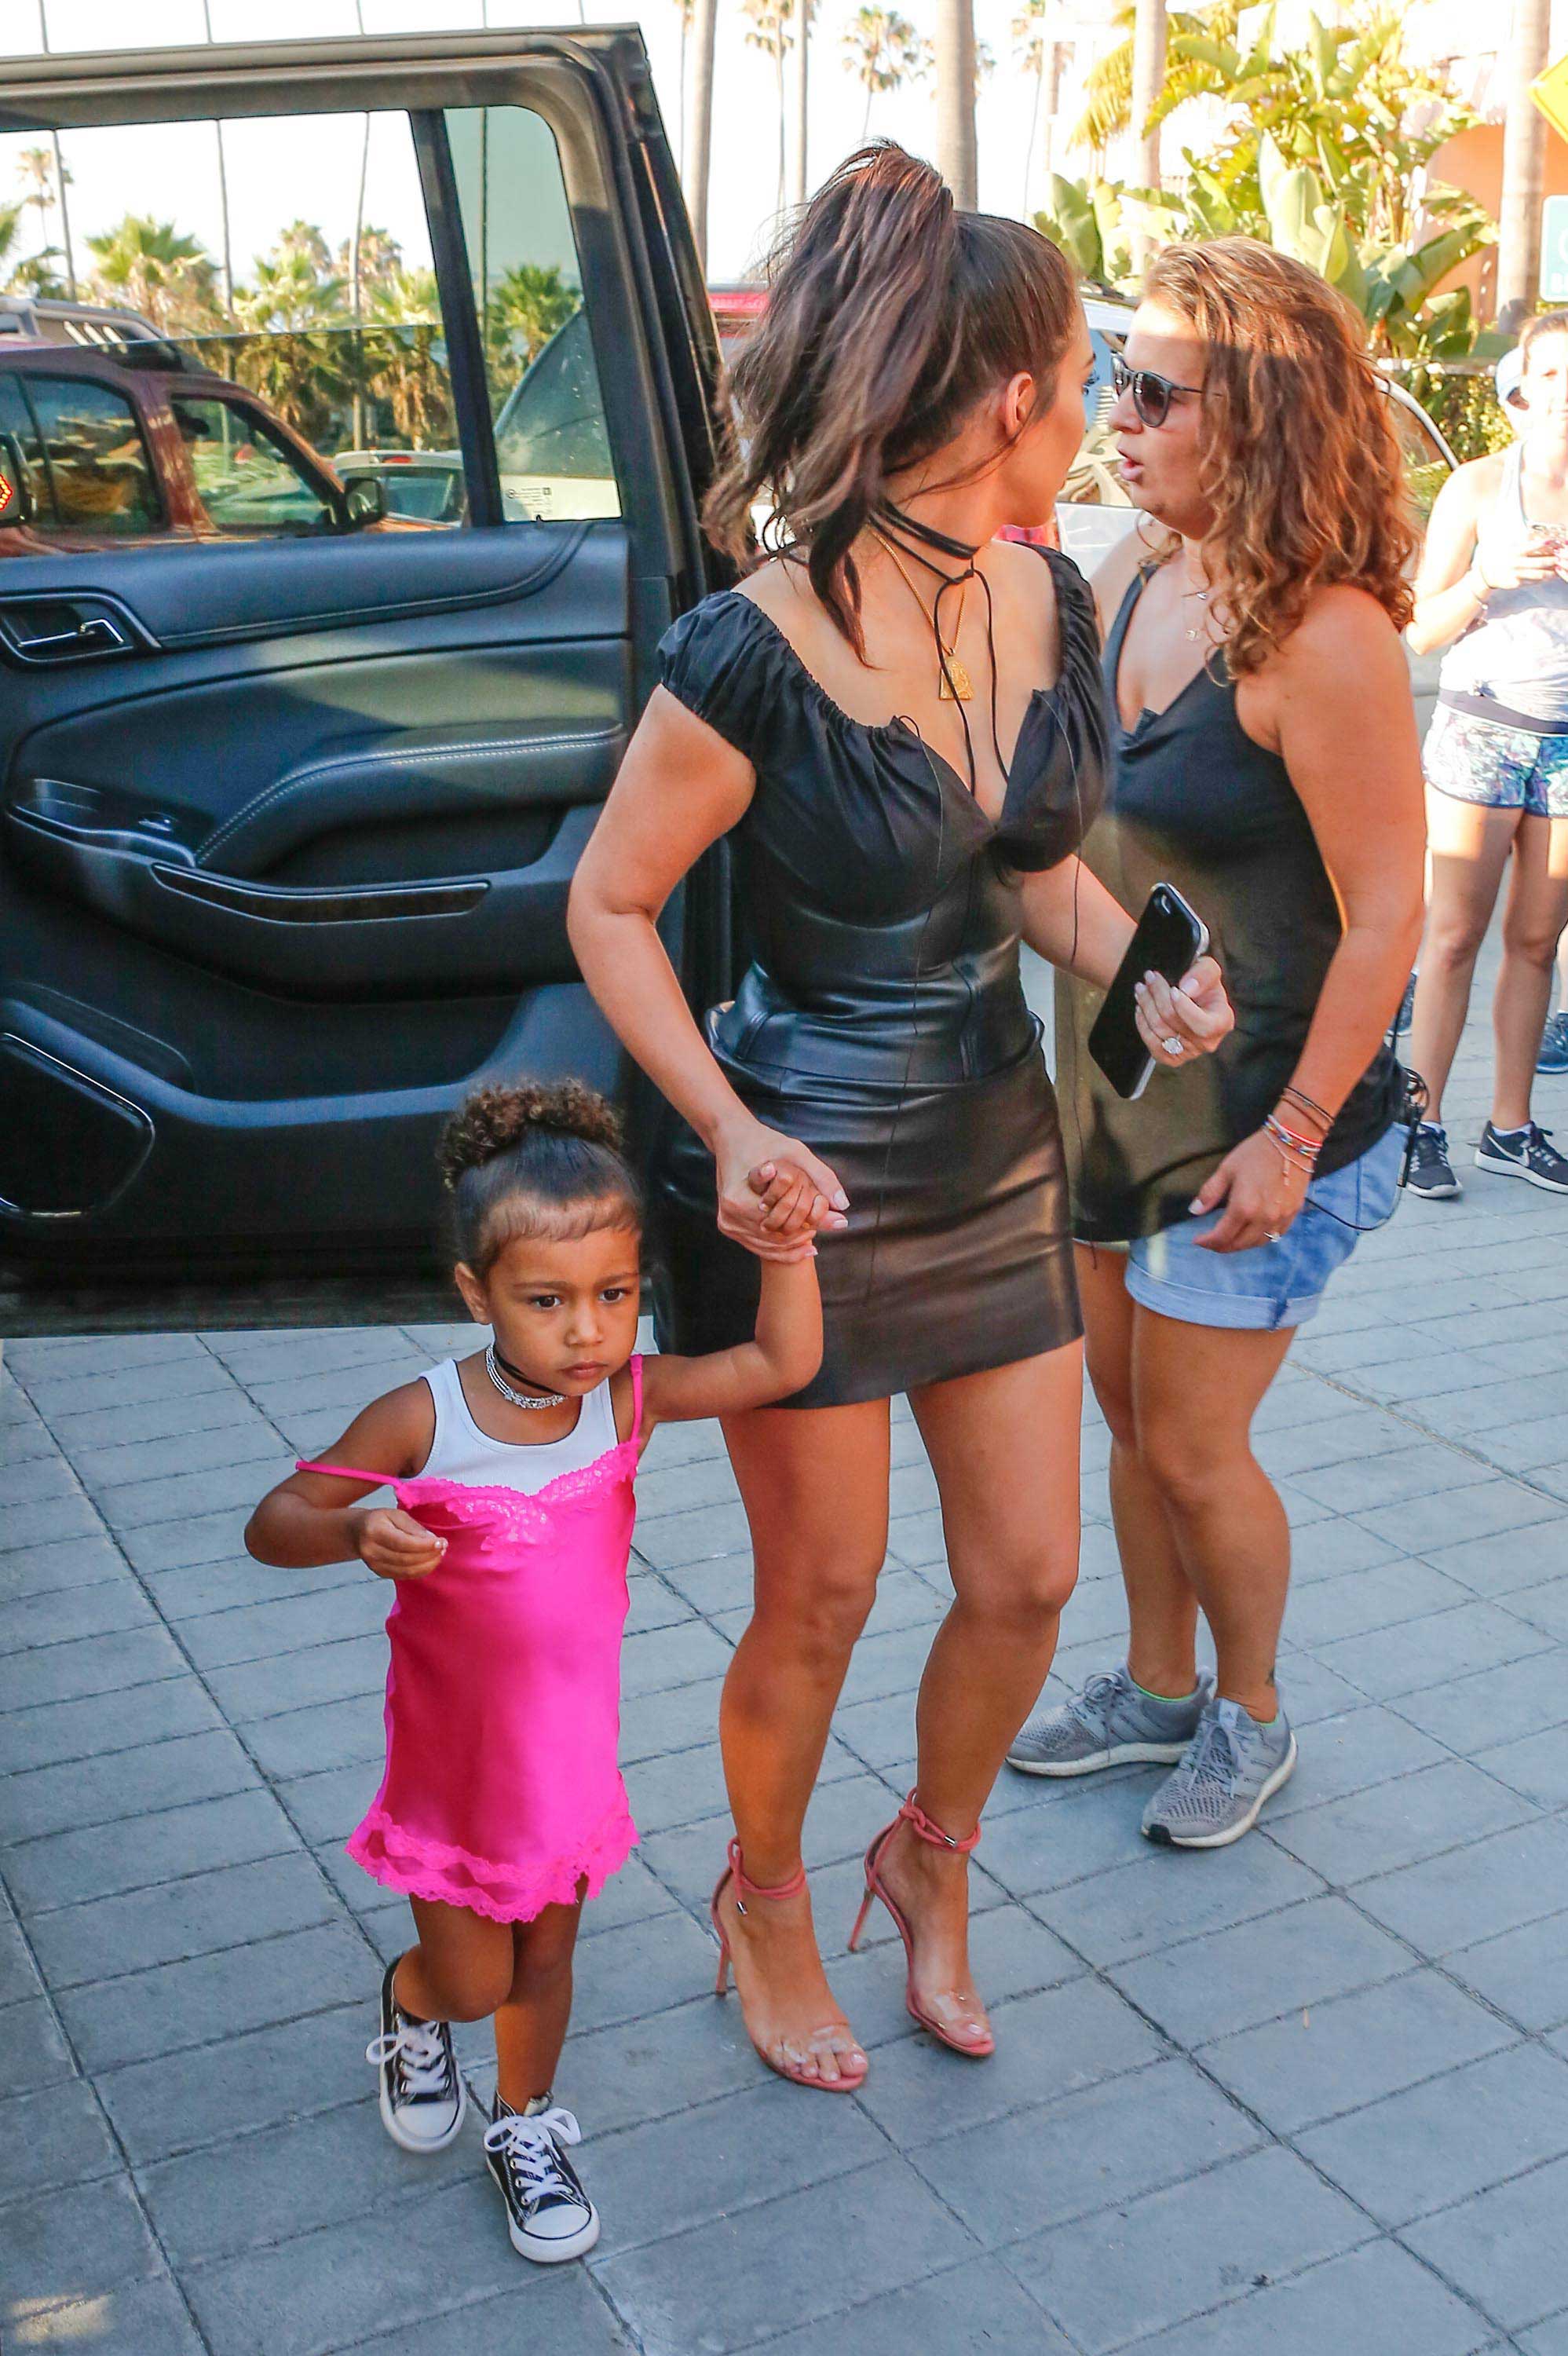 Kim Kardashian celebrating her grandmother birthday